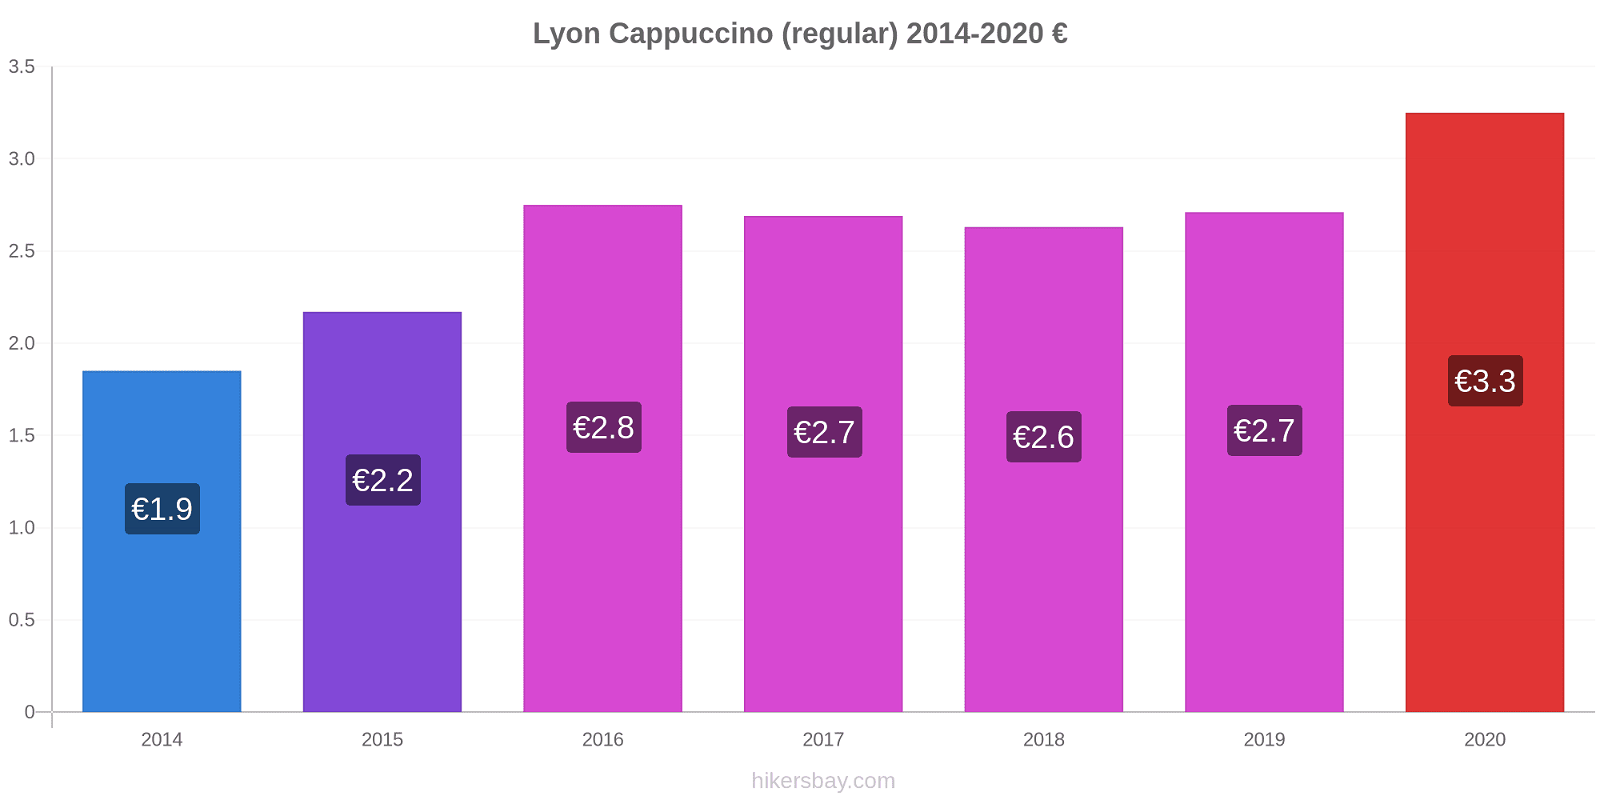 Lyon variação de preço Capuccino (regular) hikersbay.com